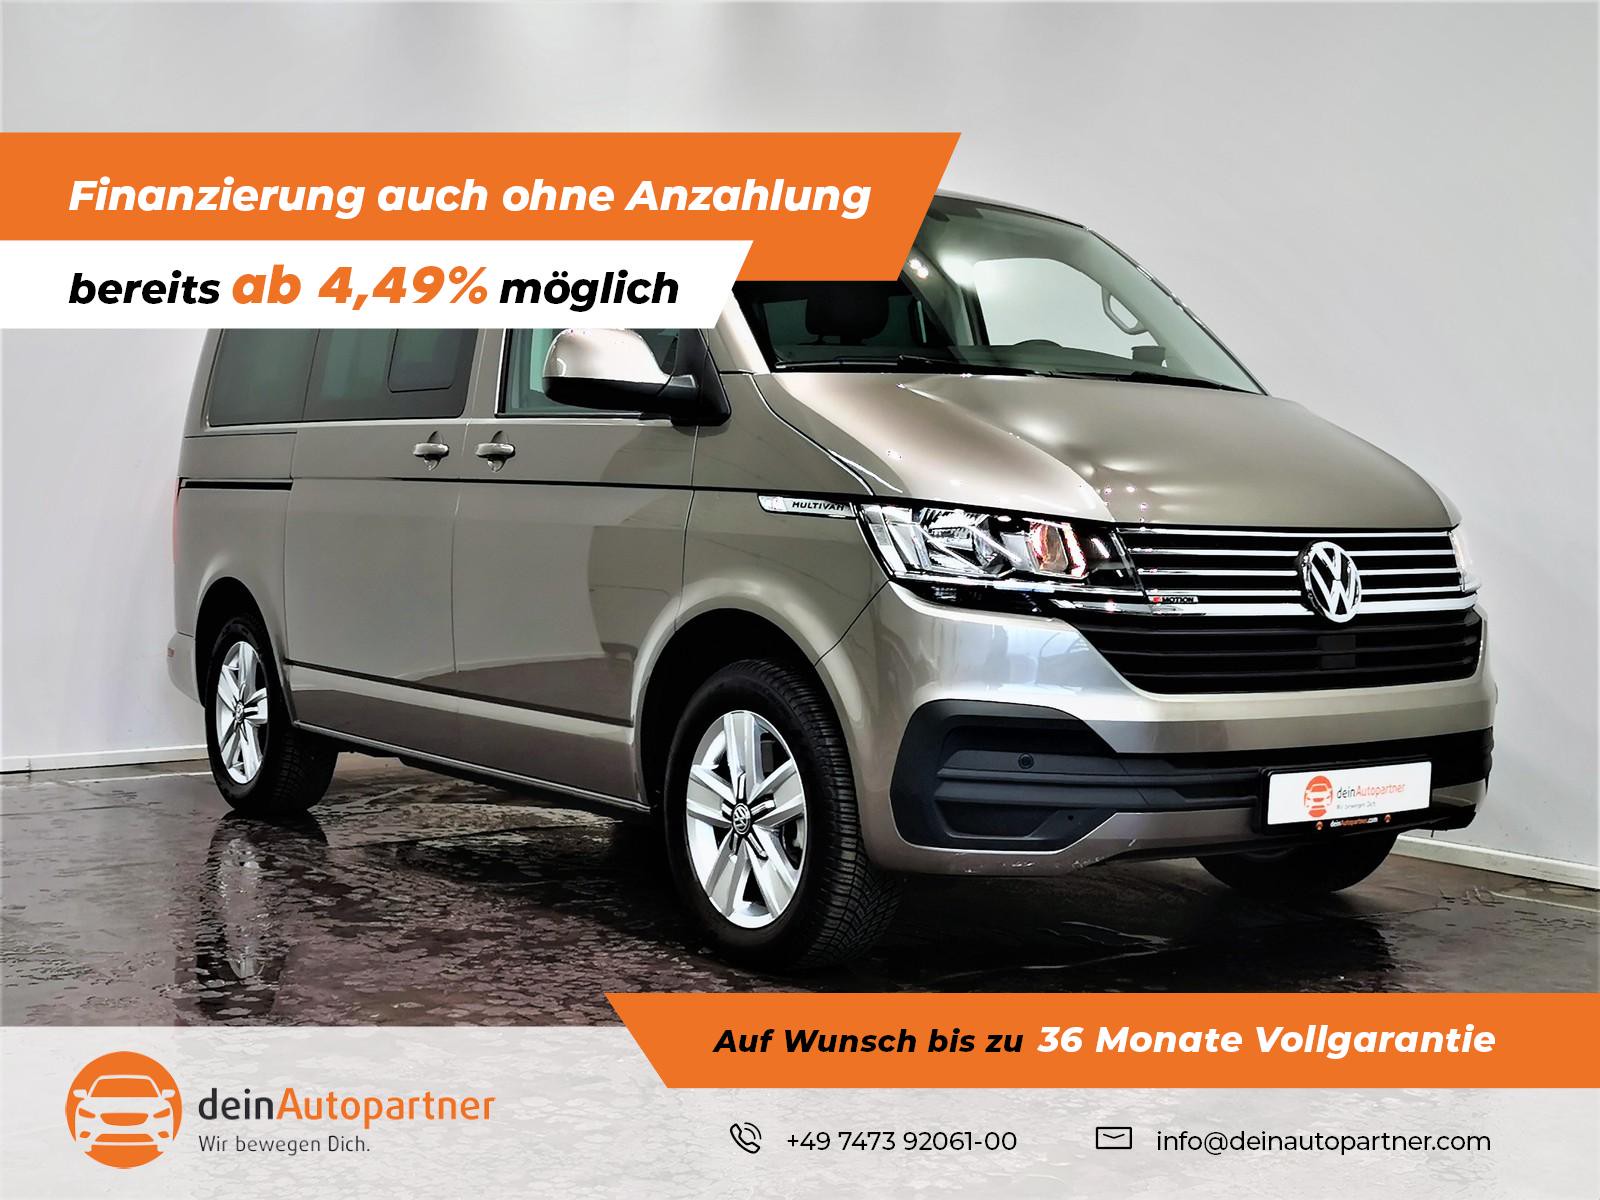 Volkswagen T6.1 Multivan gebraucht kaufen in Mössingen Preis 57690 eur -  Int.Nr.: 1237